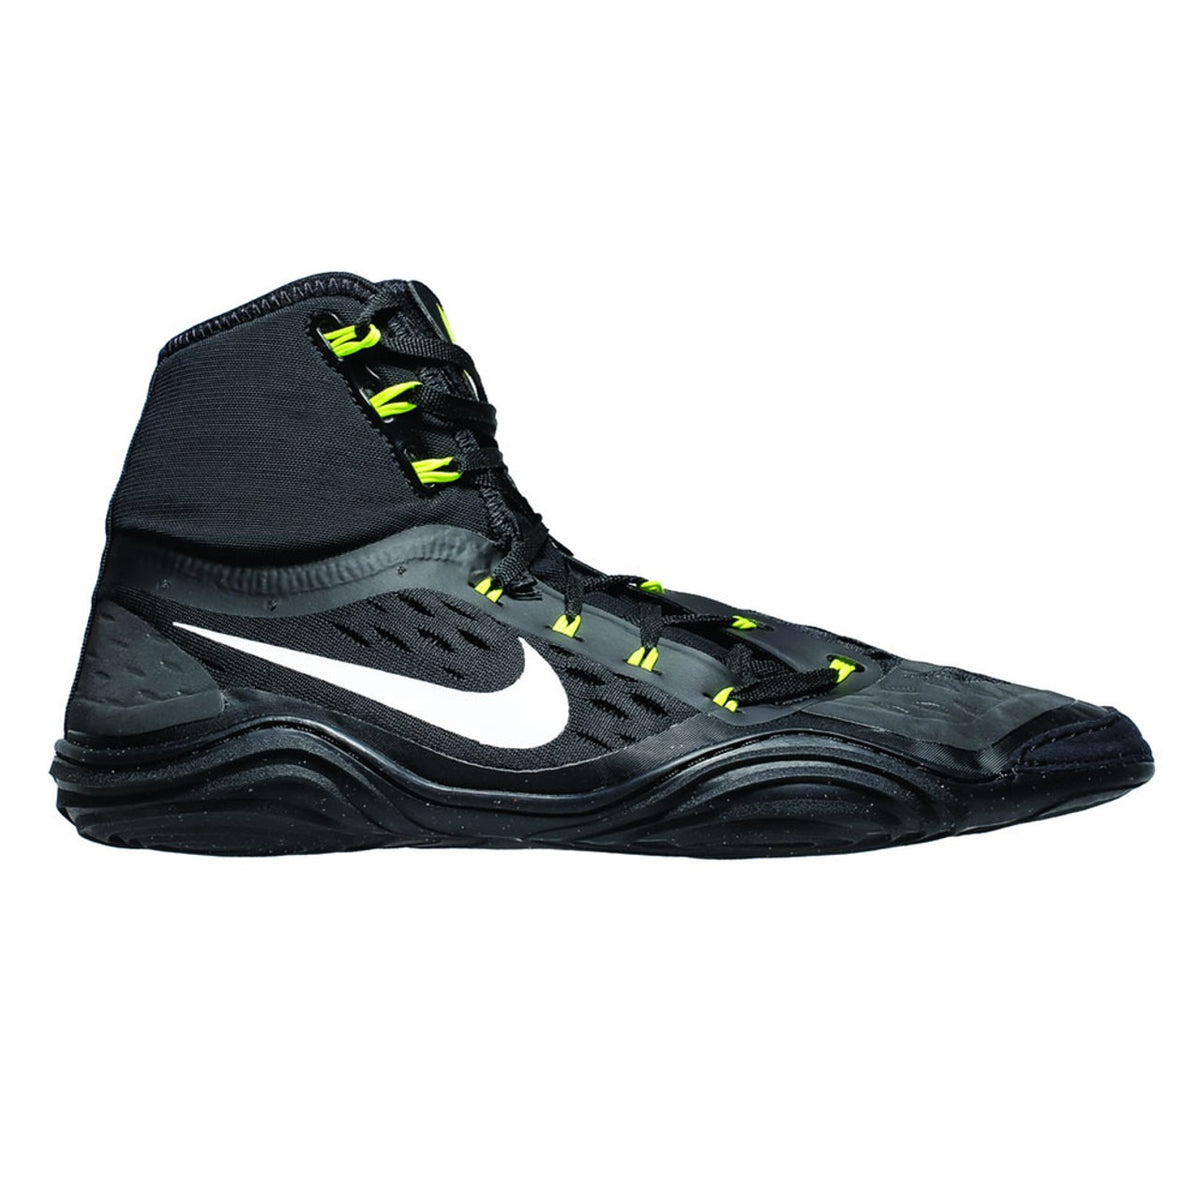 Zapatos de lucha Nike HYPERSWEEP LE. El zapato de lucha profesional para todos los luchadores ambiciosos. Con la tecnología más avanzada, Nike Hypersweep te brinda mucho agarre en la alfombra de lucha. En entrenamiento y competición. Aquí en color negro/voltio.